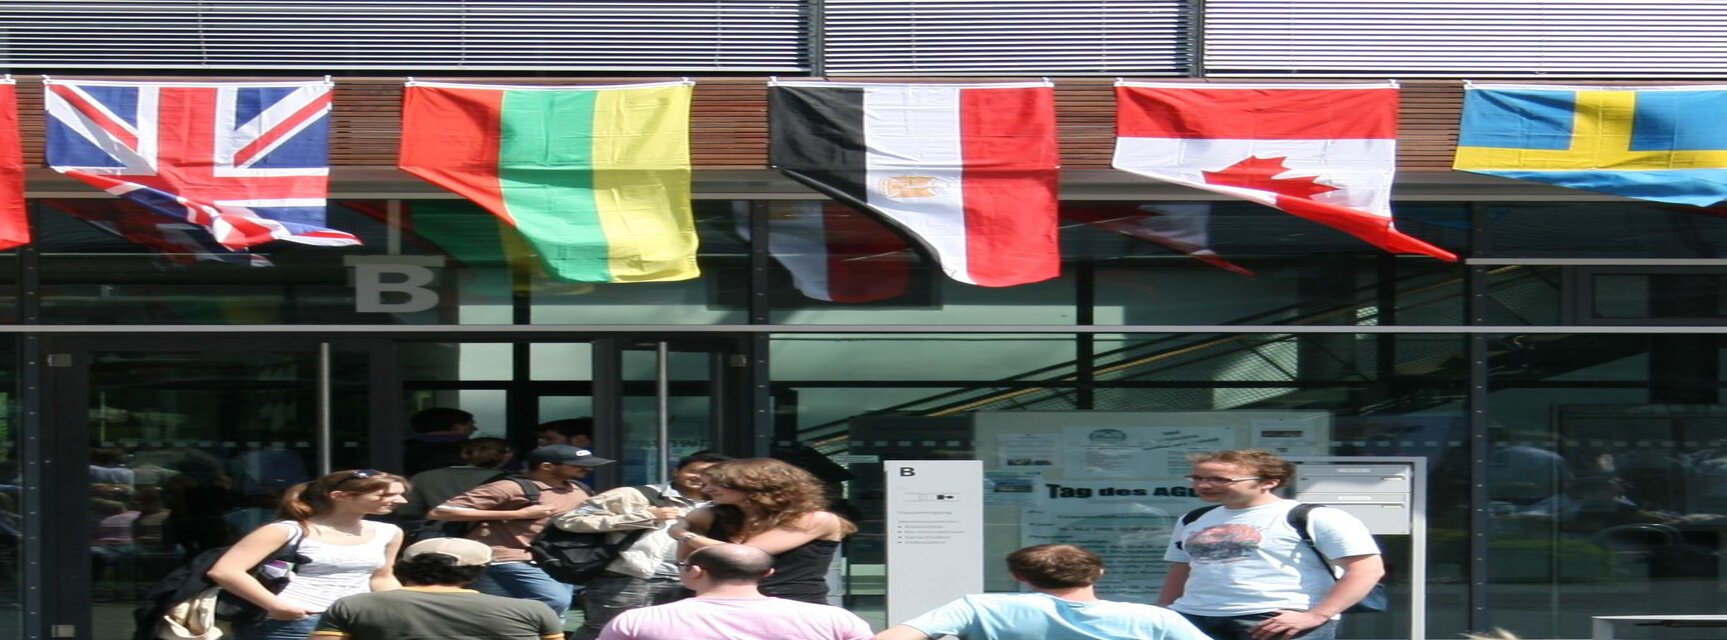 Flag displays during International Week